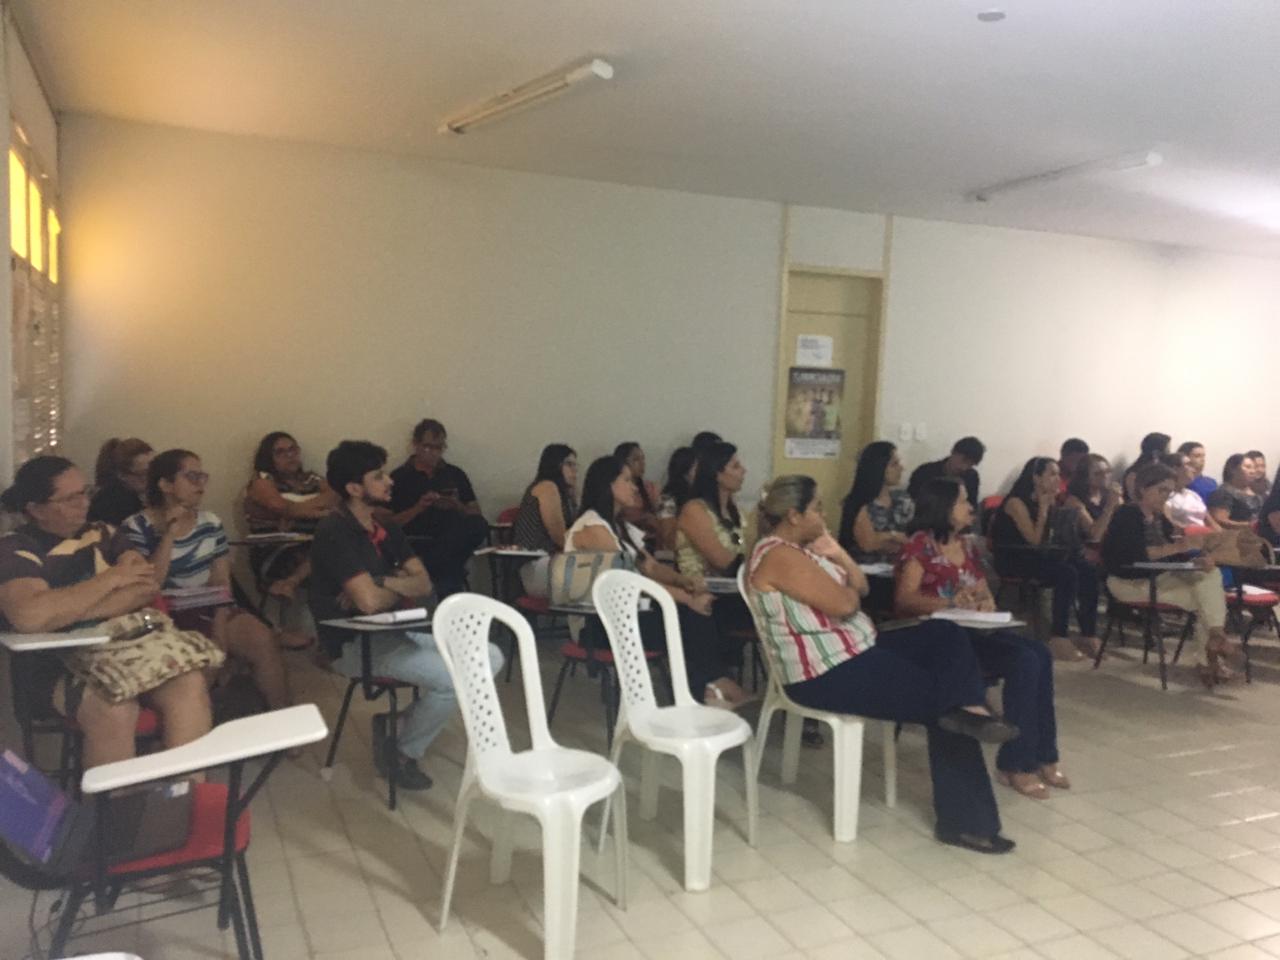 Reunião trata do controle epidemiológico de Covid-19 em Piripiri; veja  horários